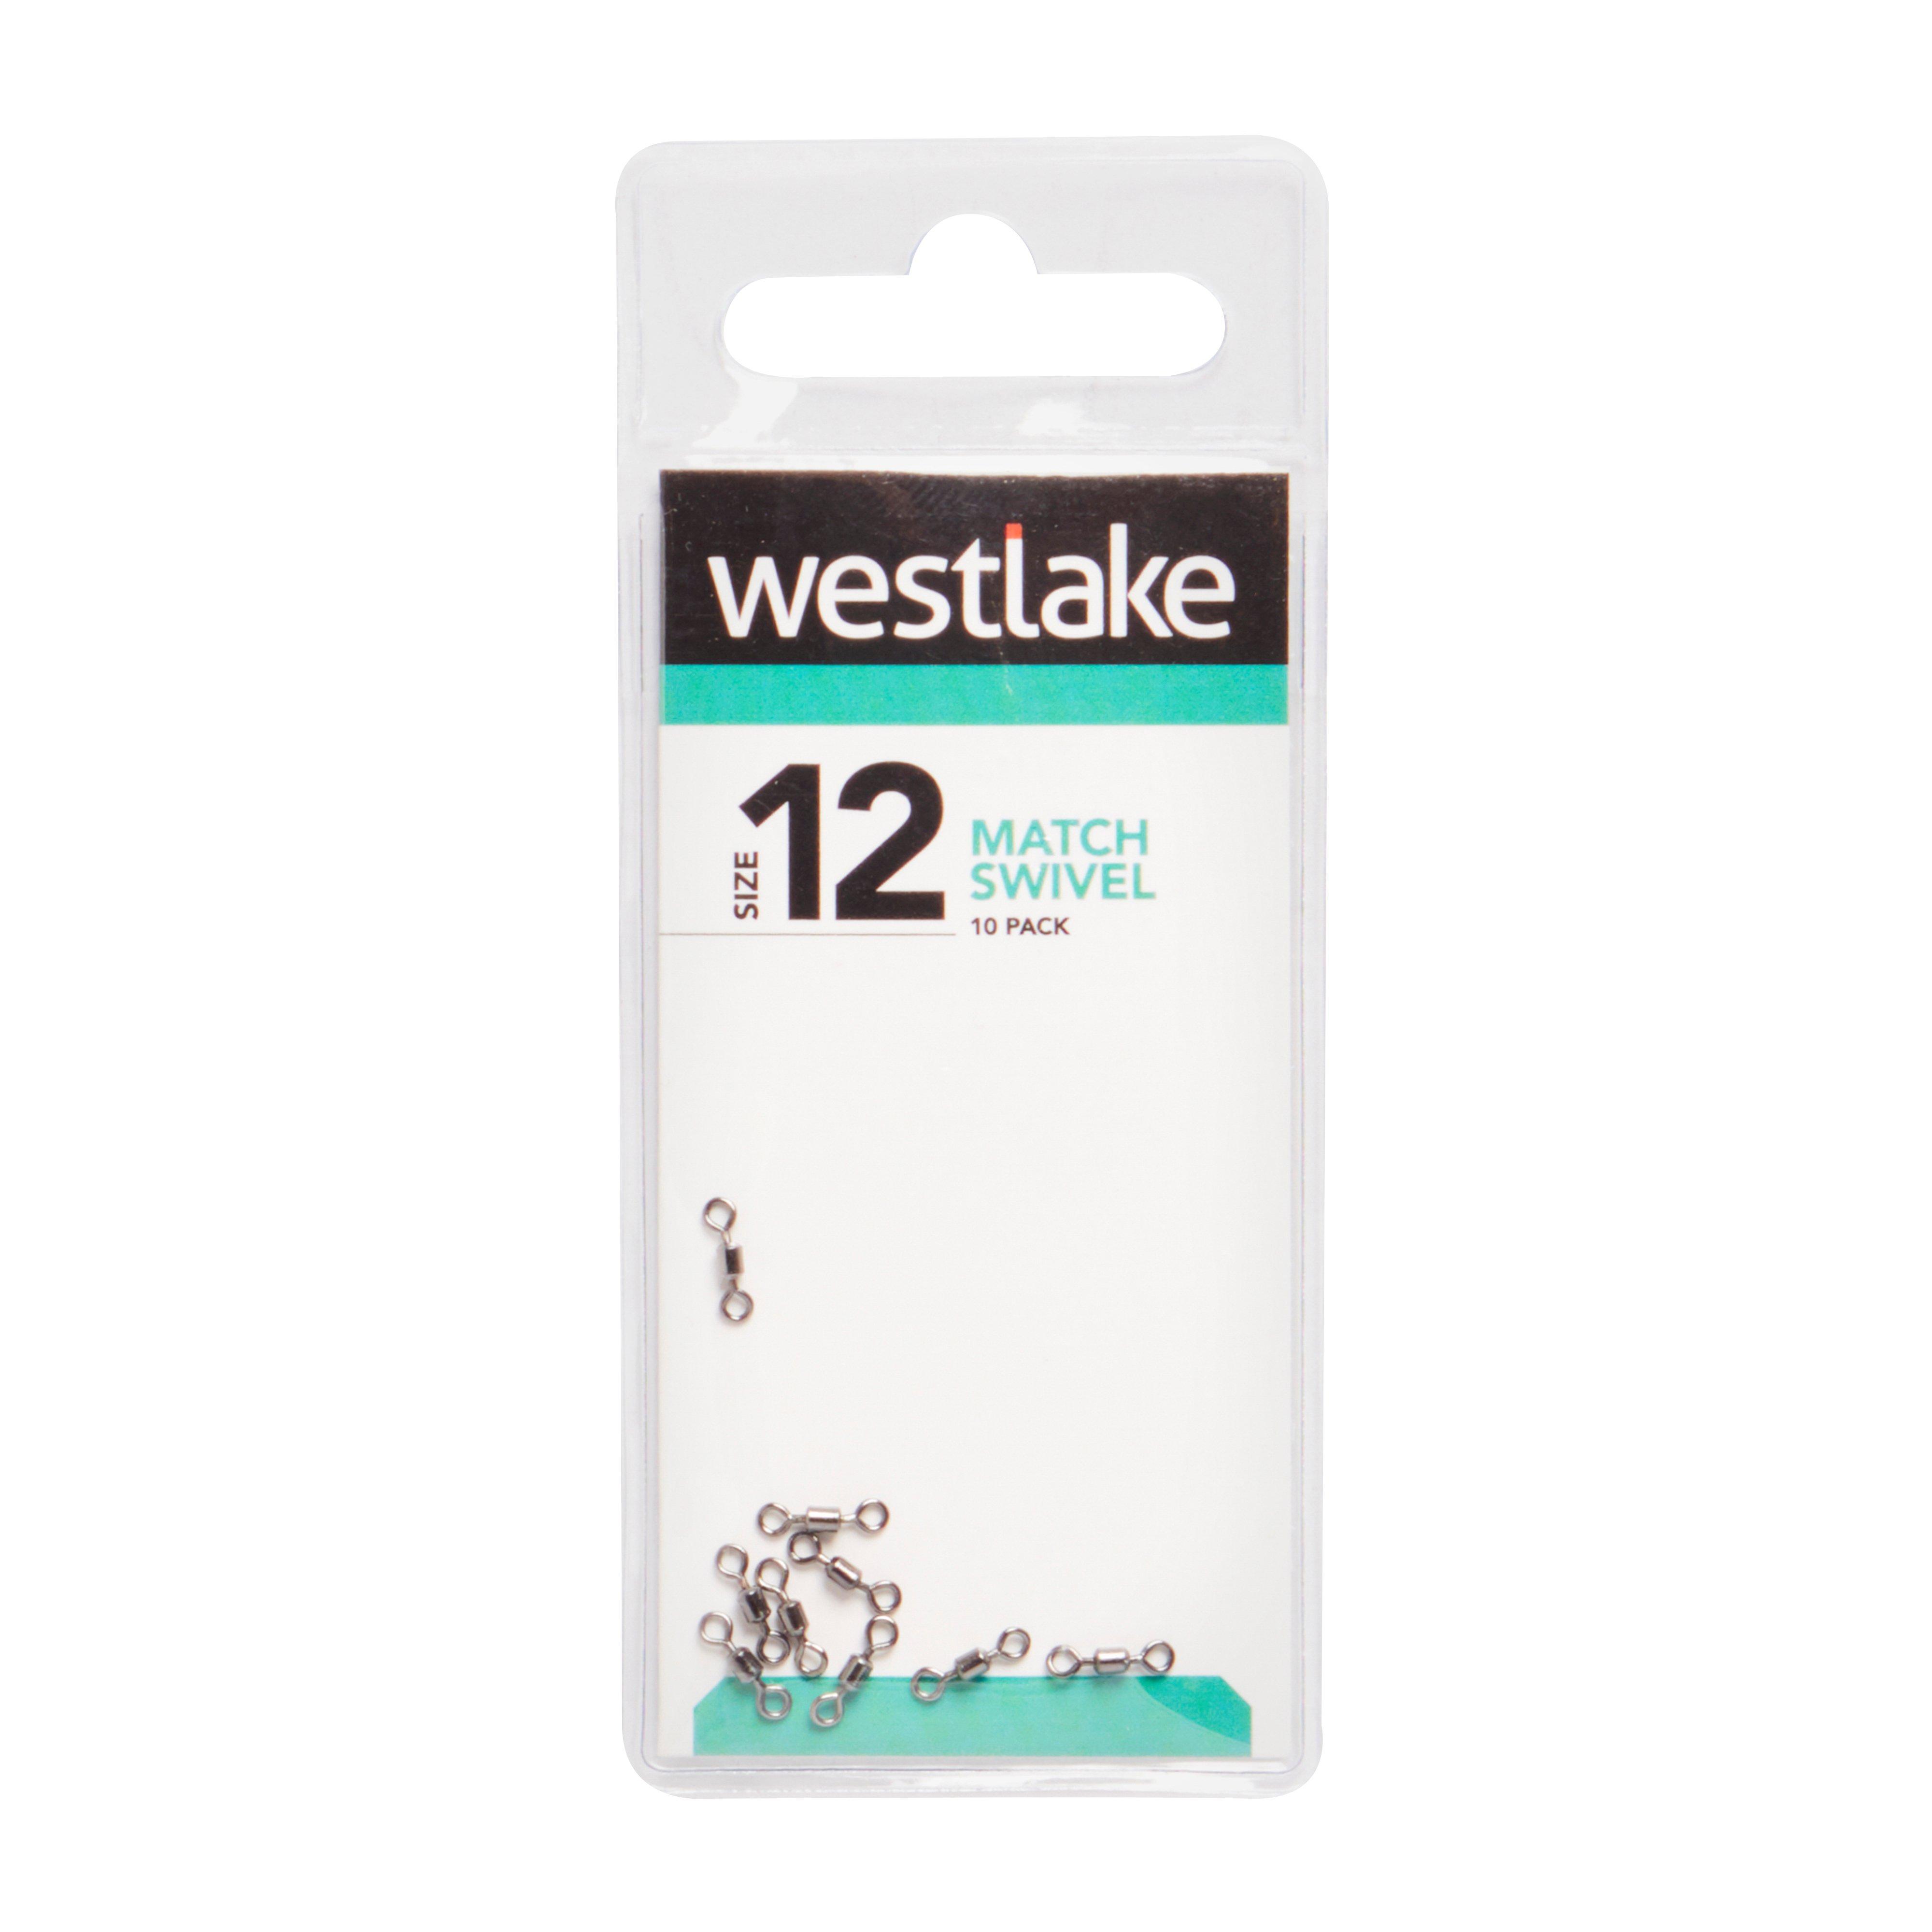 Westlake Match Swivel Size 12 10Pc Review